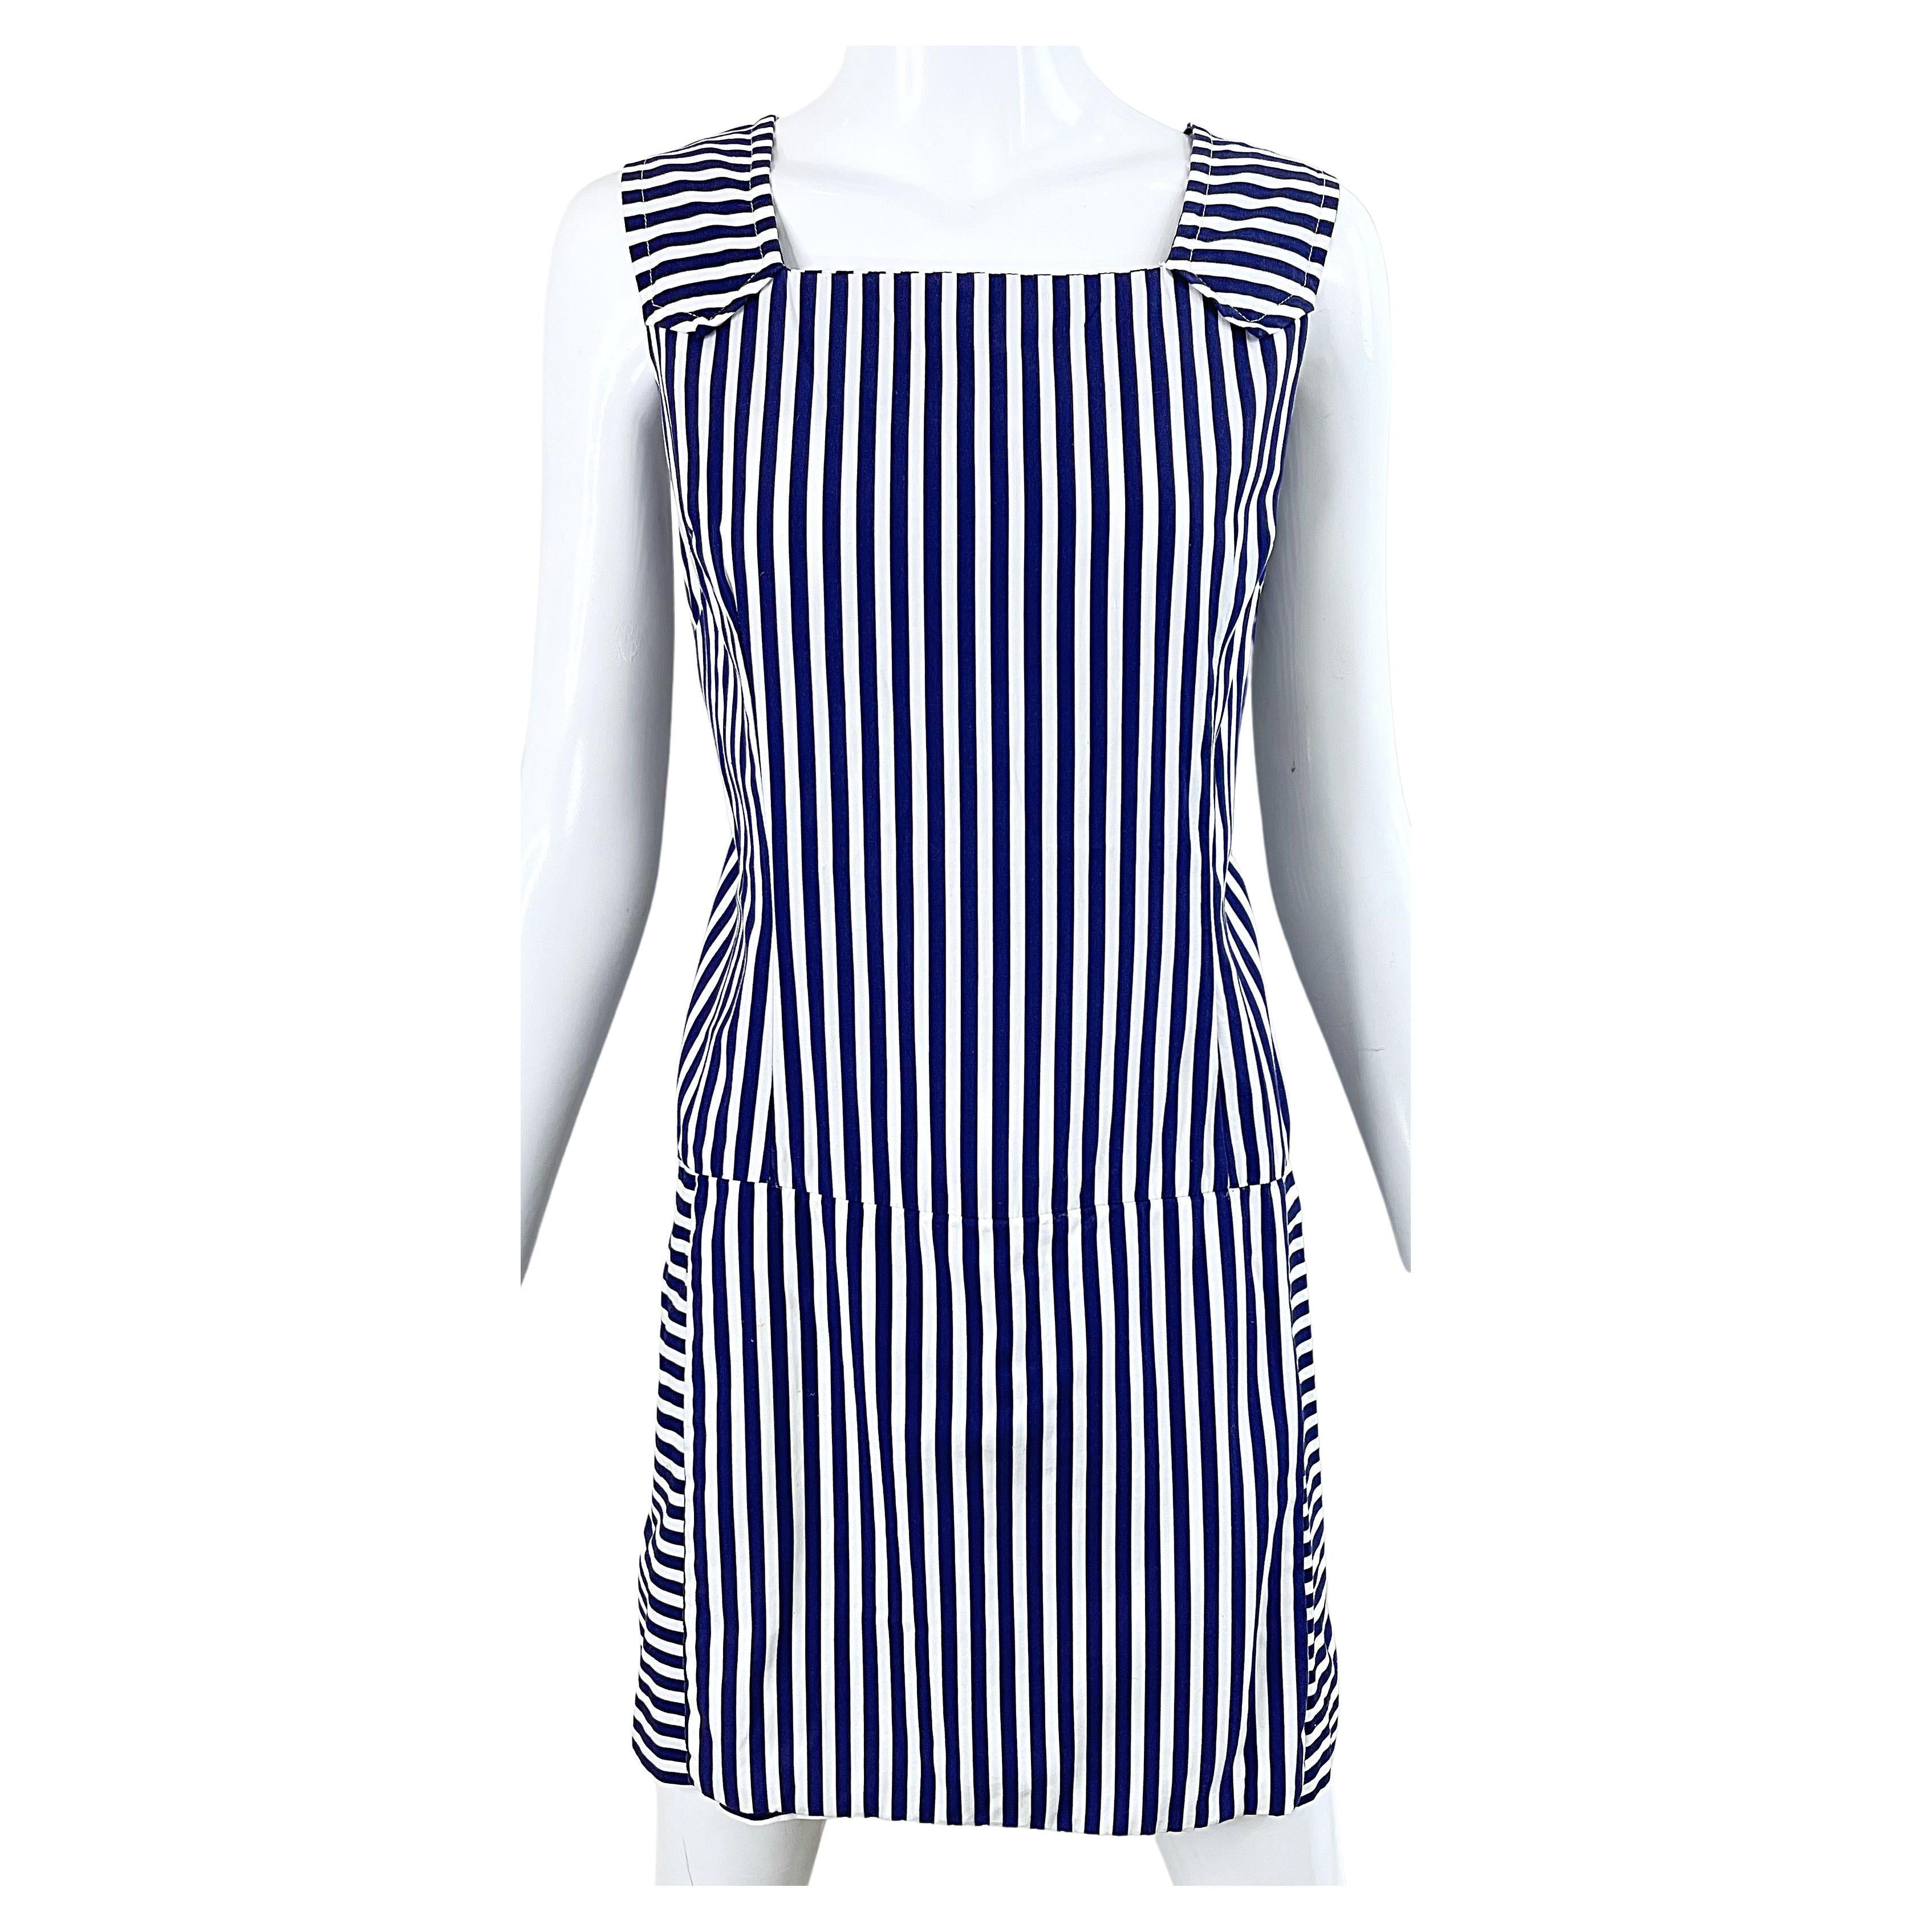 1960s Romper Large Size Navy + White Striped Cotton Vintage 60s Skort Dress For Sale